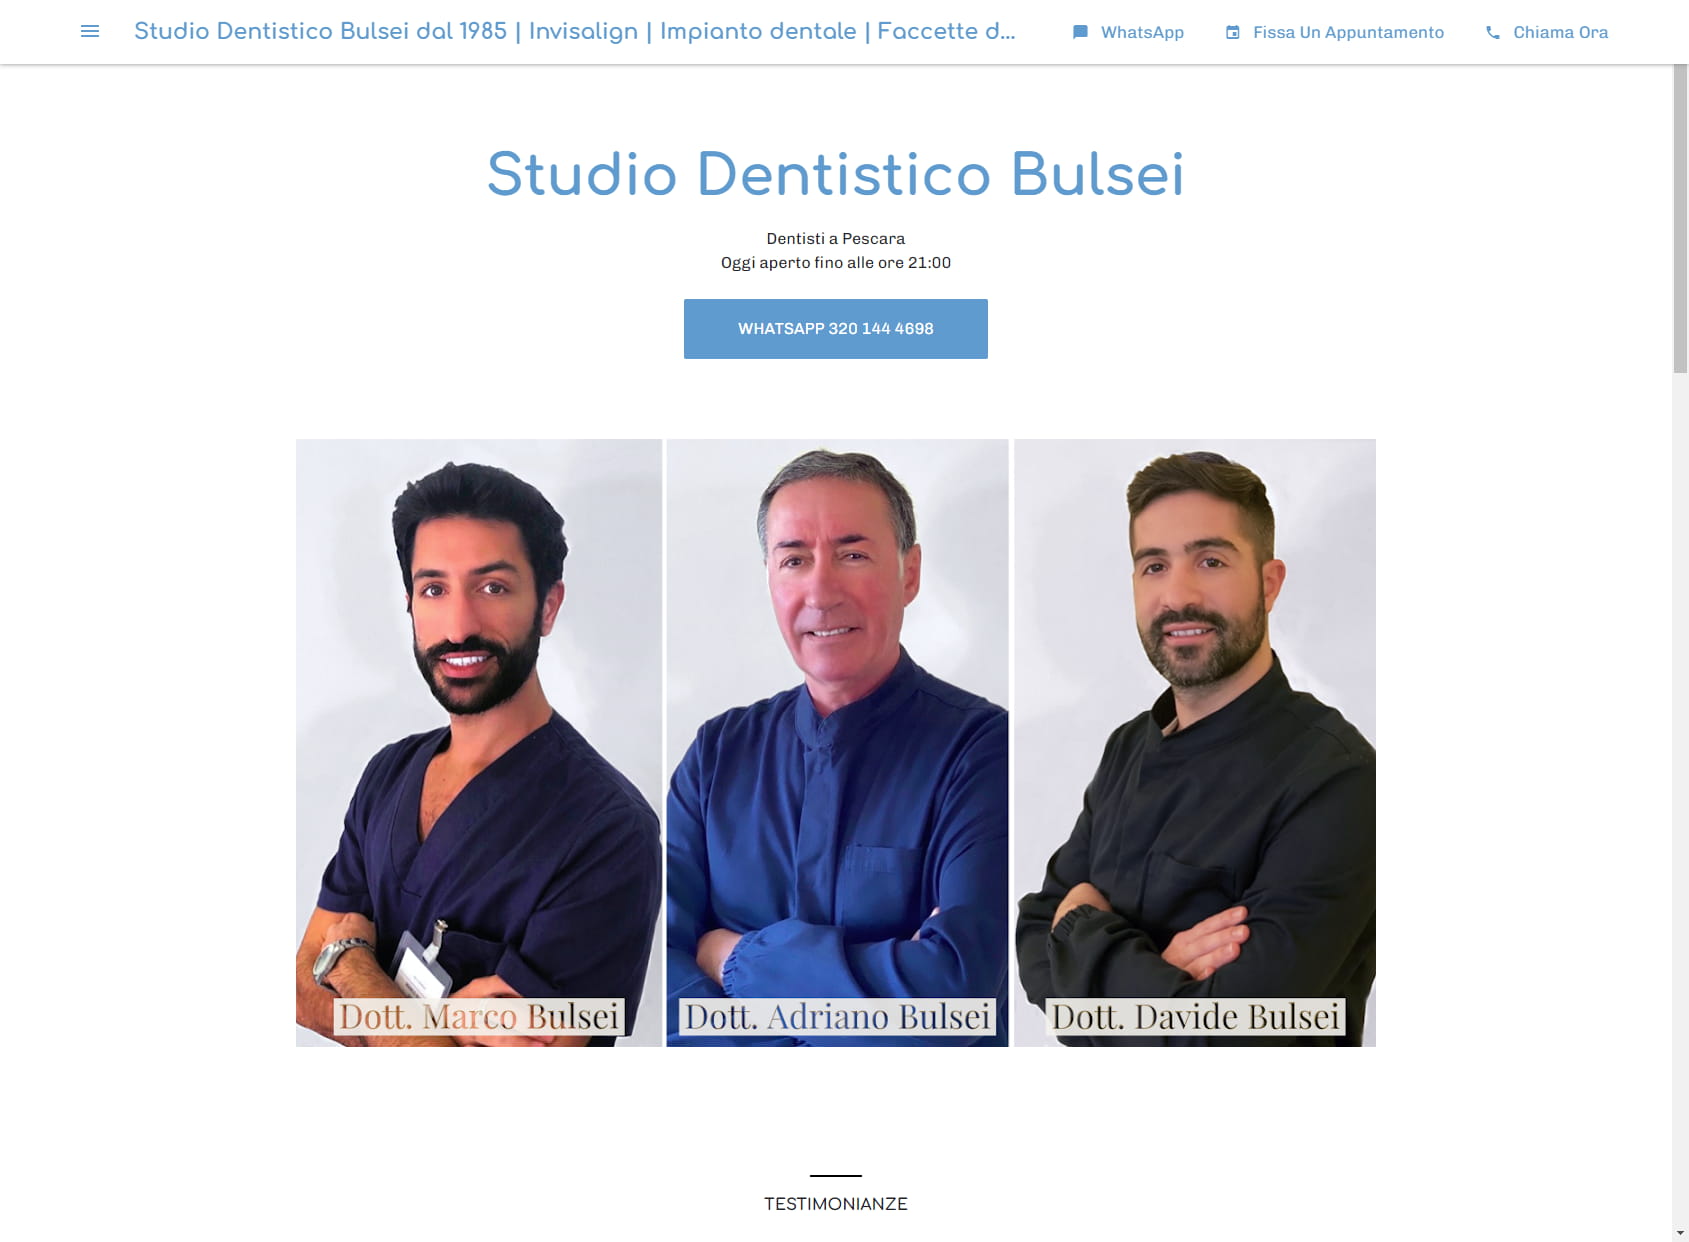 Studio Dentistico Bulsei dal 1985 | Invisalign | Impianto dentale | Faccette dentali